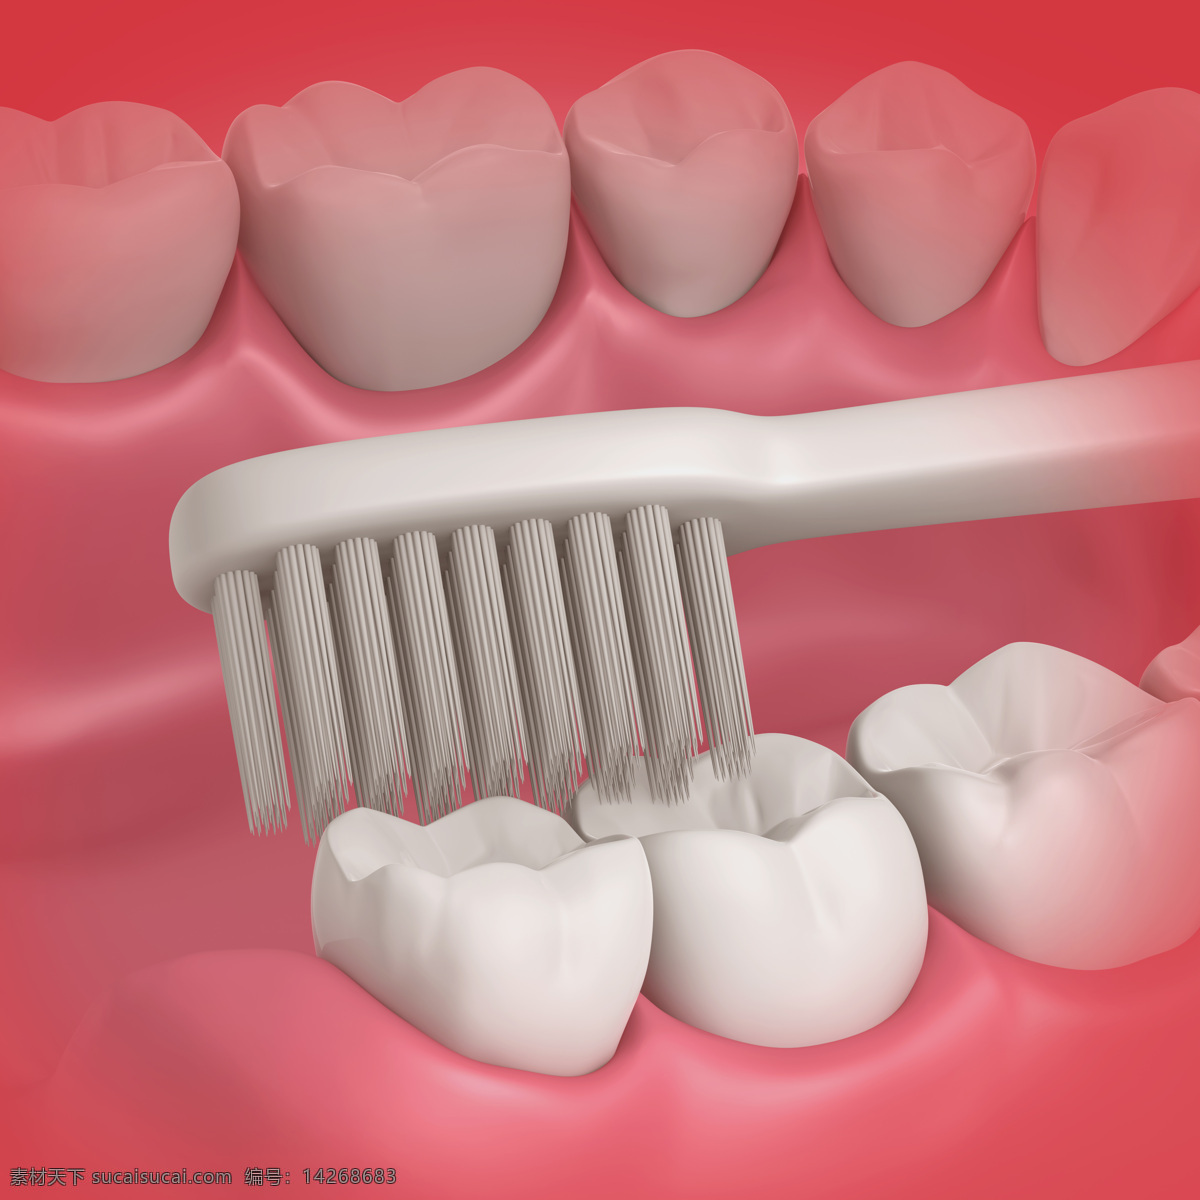 刷牙 假牙 白牙 牙齿 保护牙齿 洁白牙齿 健康牙齿 口腔护理 3d设计 3d作品